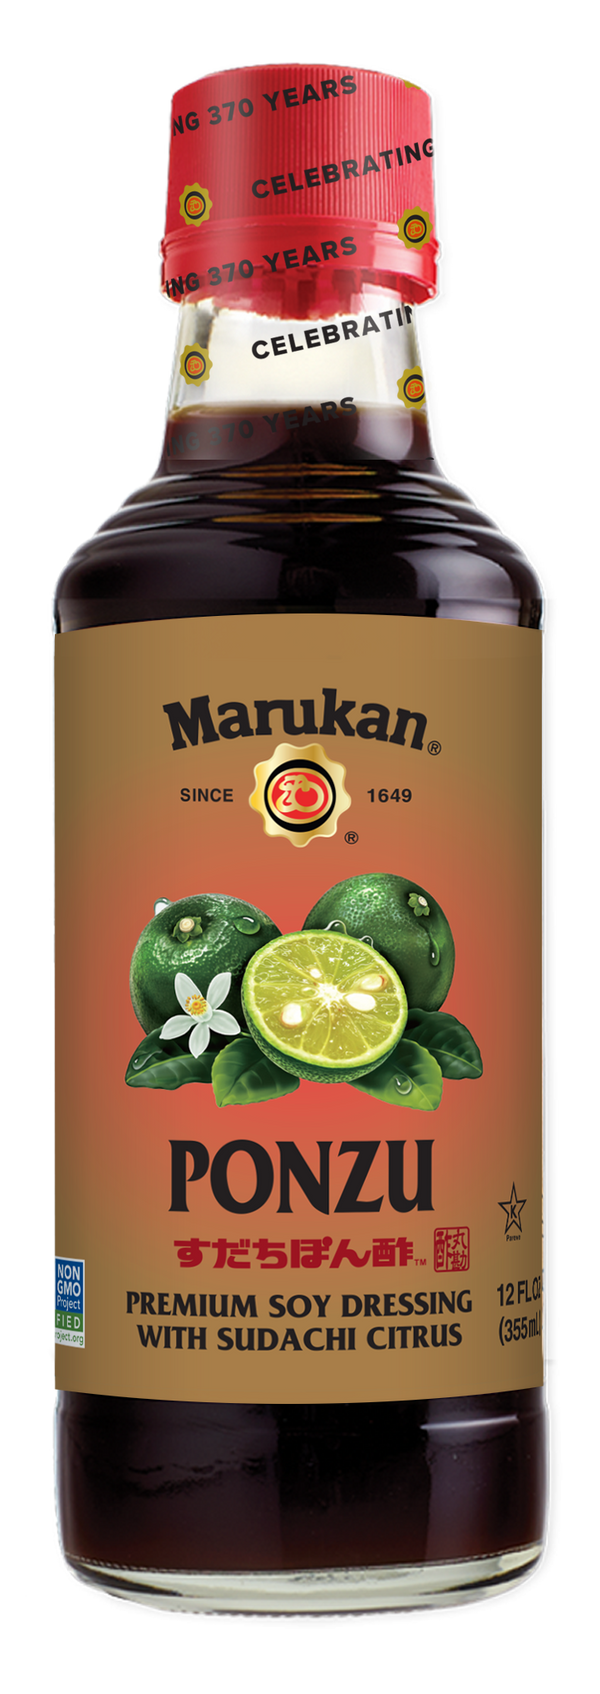 Marukan - Ponzu, Premium Soy Dressing with Sudachi Citrus